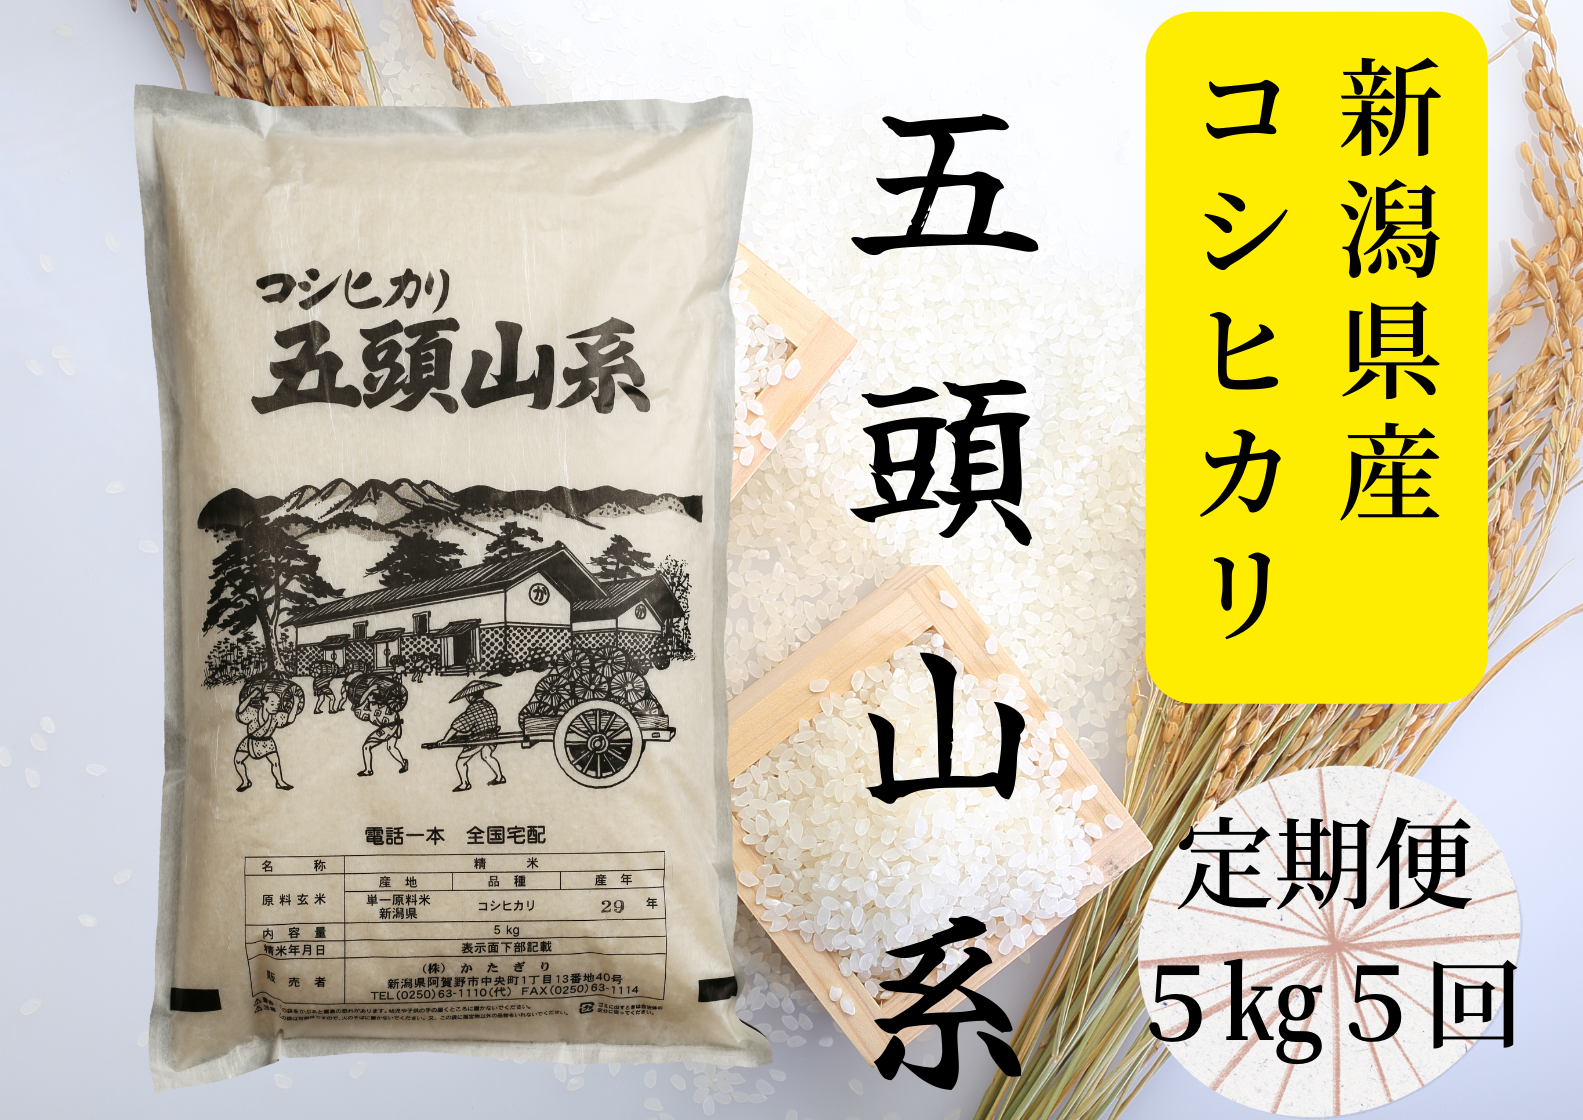 【5回定期便】「米屋のこだわり阿賀野市産」コシヒカリ5kg×5回 1E22044